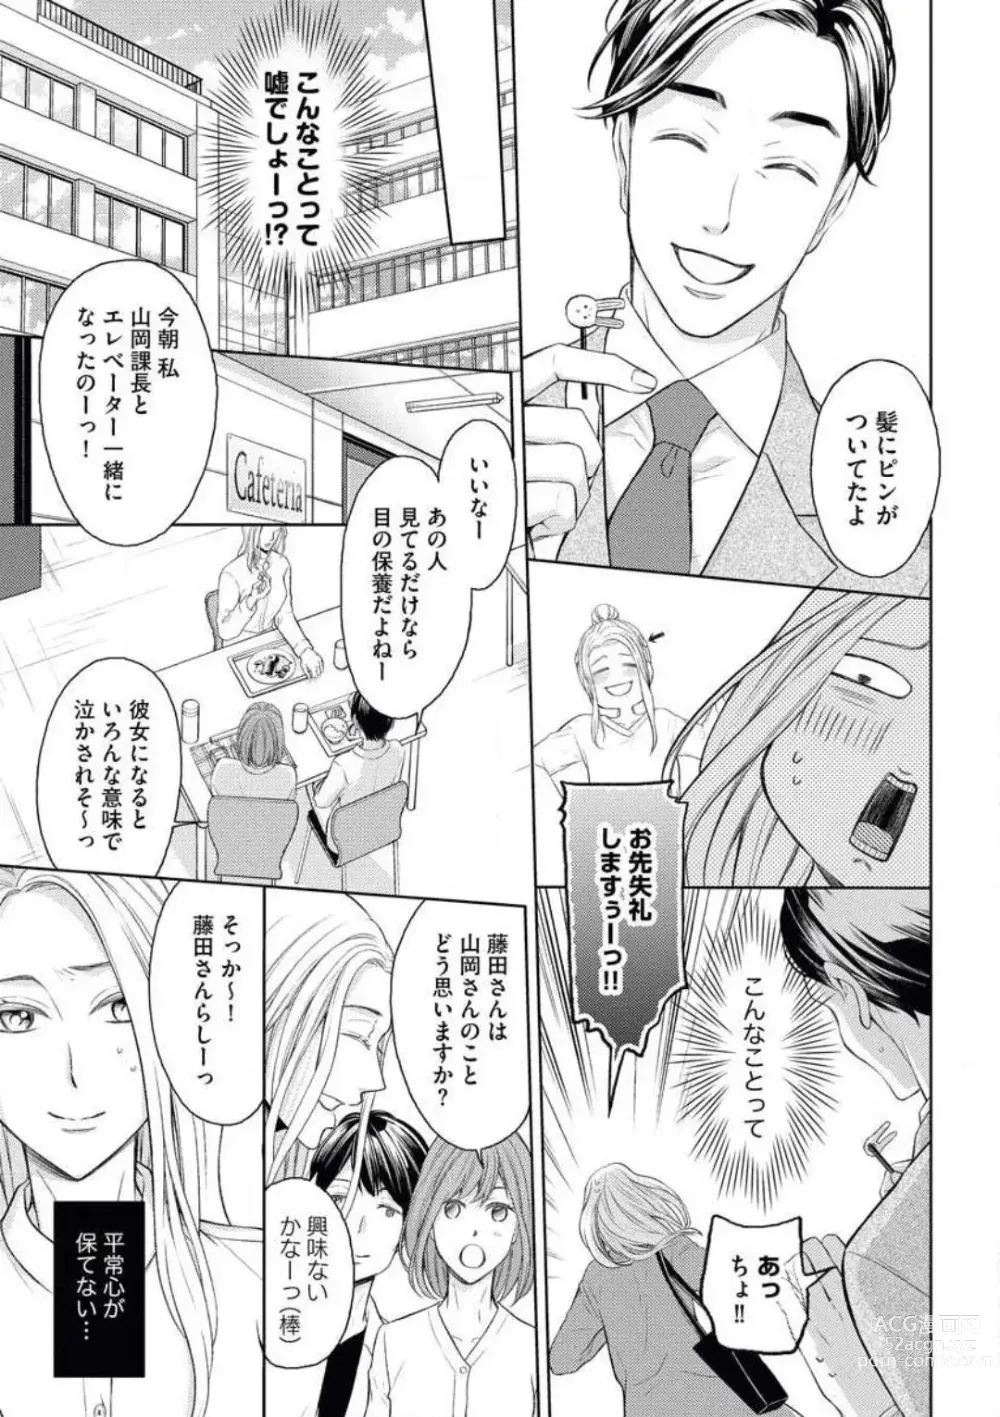 Page 7 of manga Mitsu Koi Maisonette